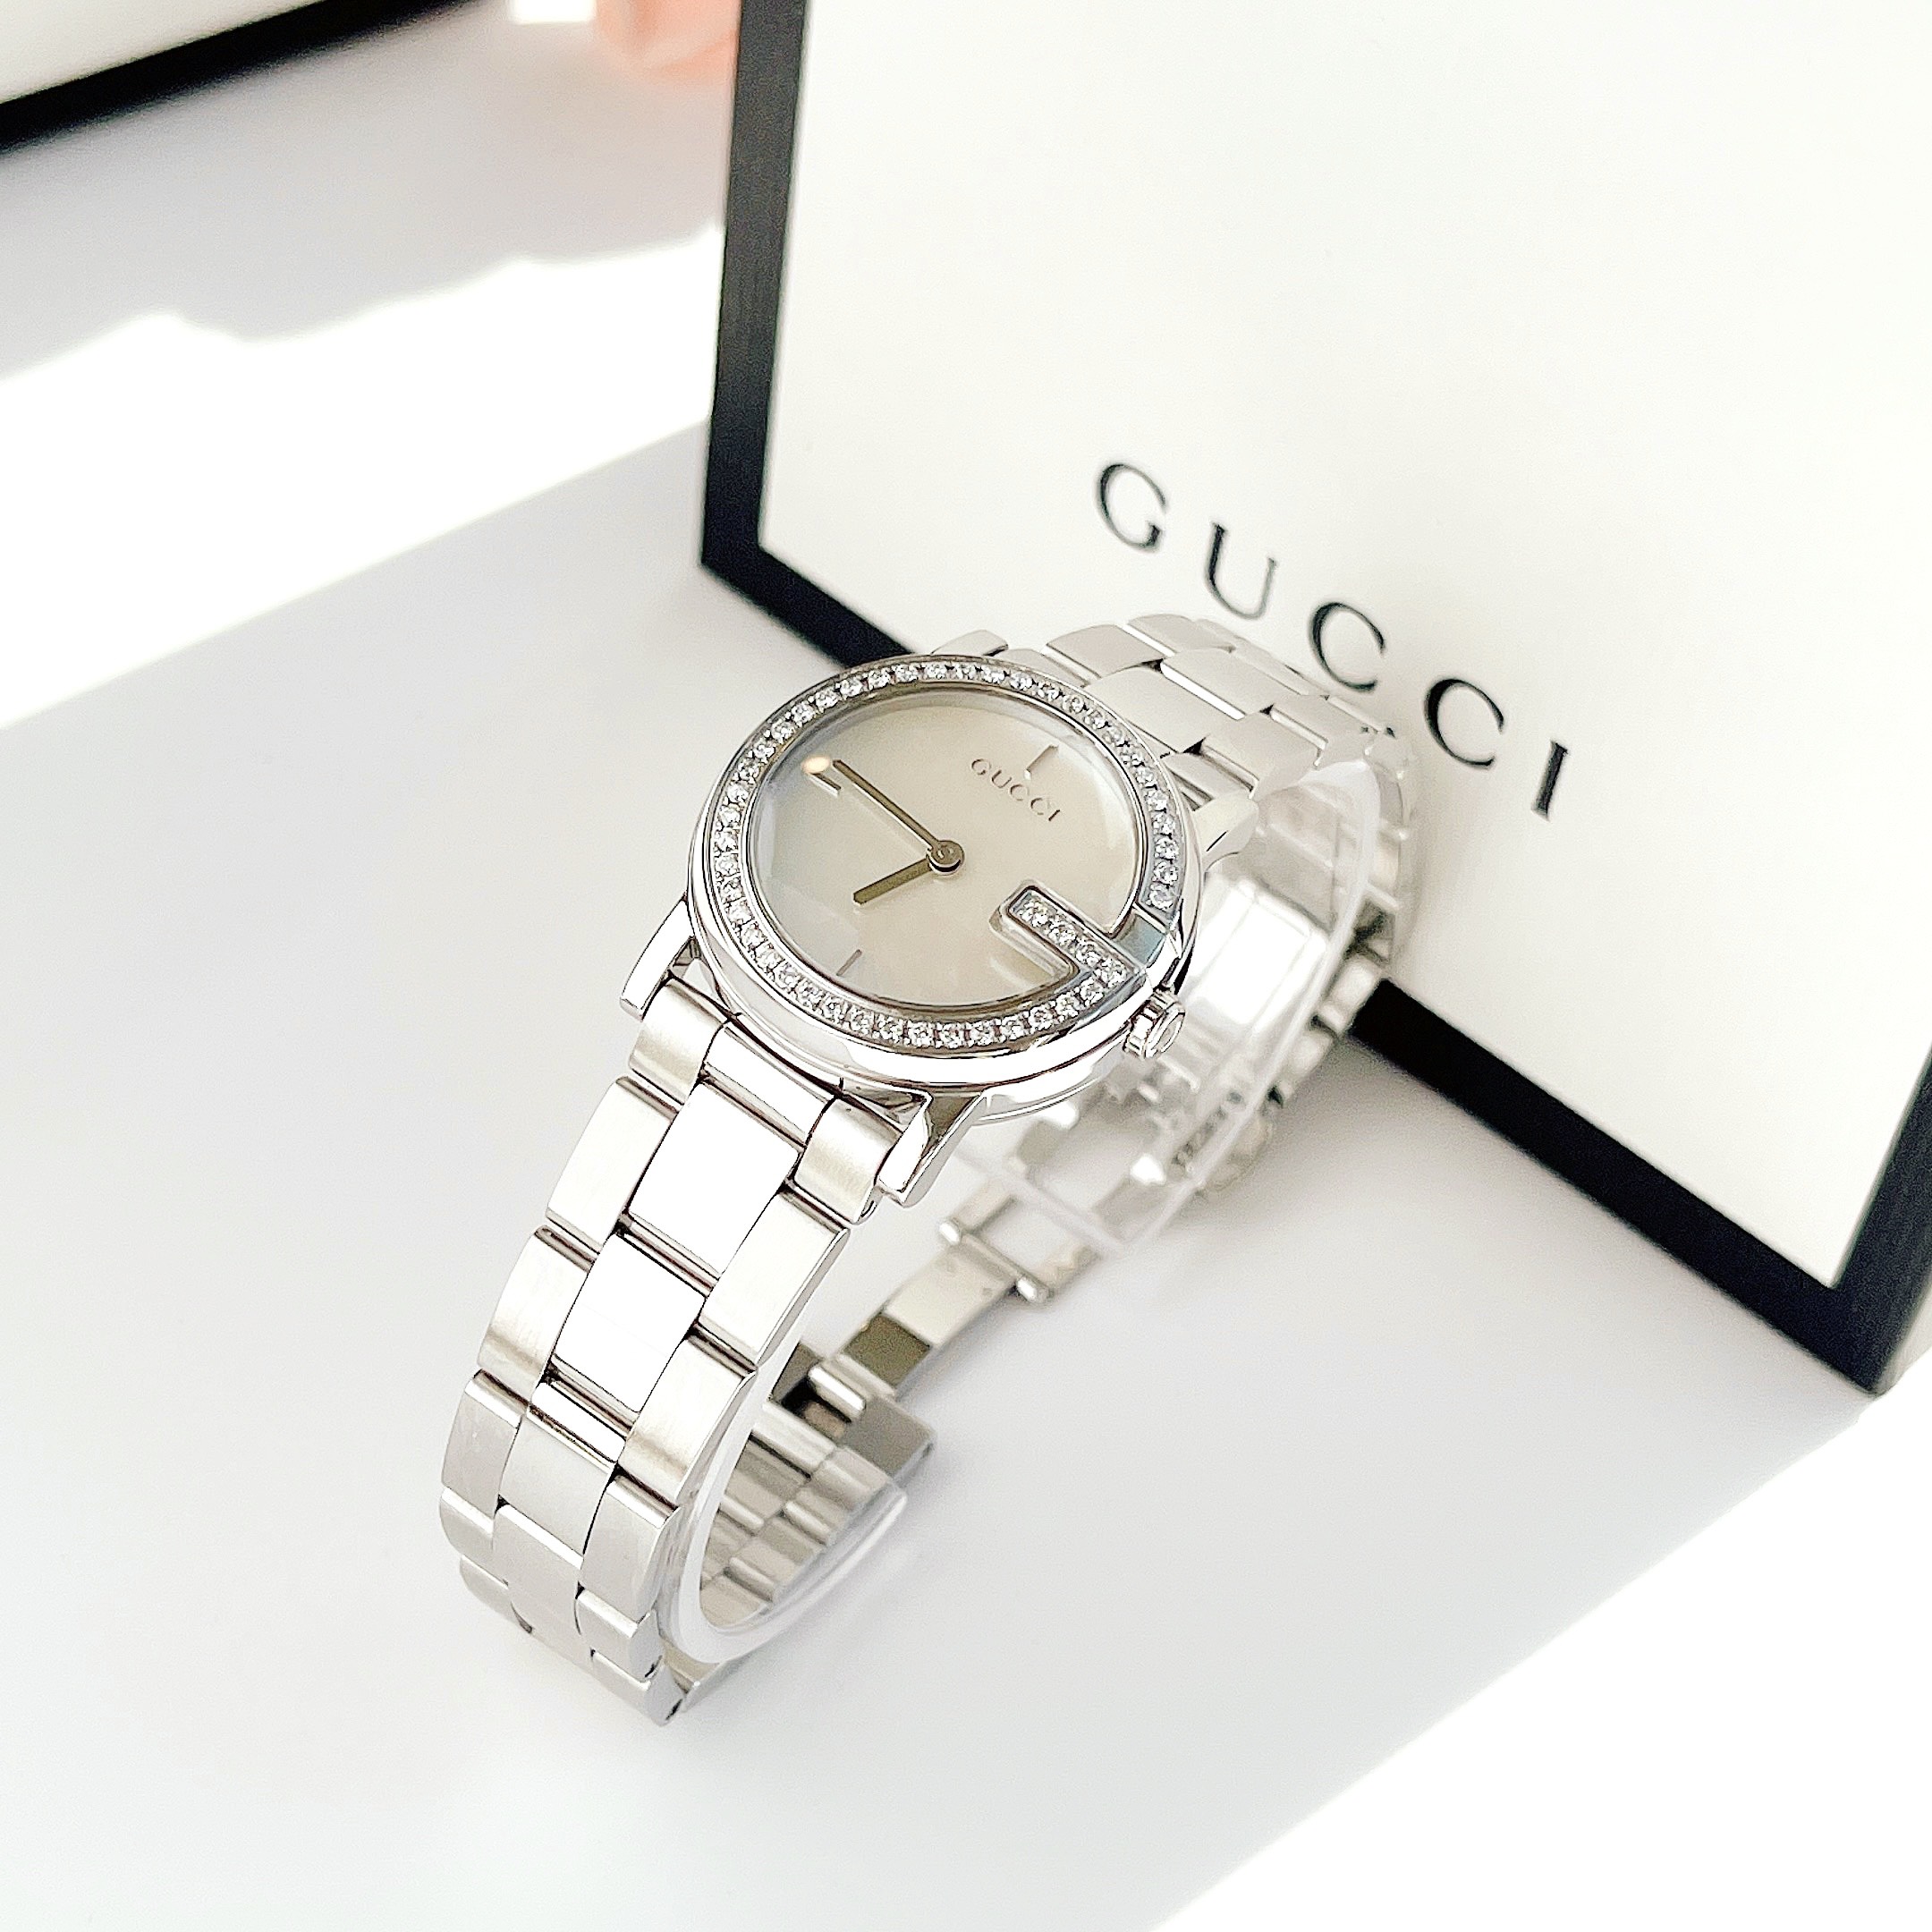 Đồng hồ Gucci vàng danh giá dành cho quý ông hiện đại